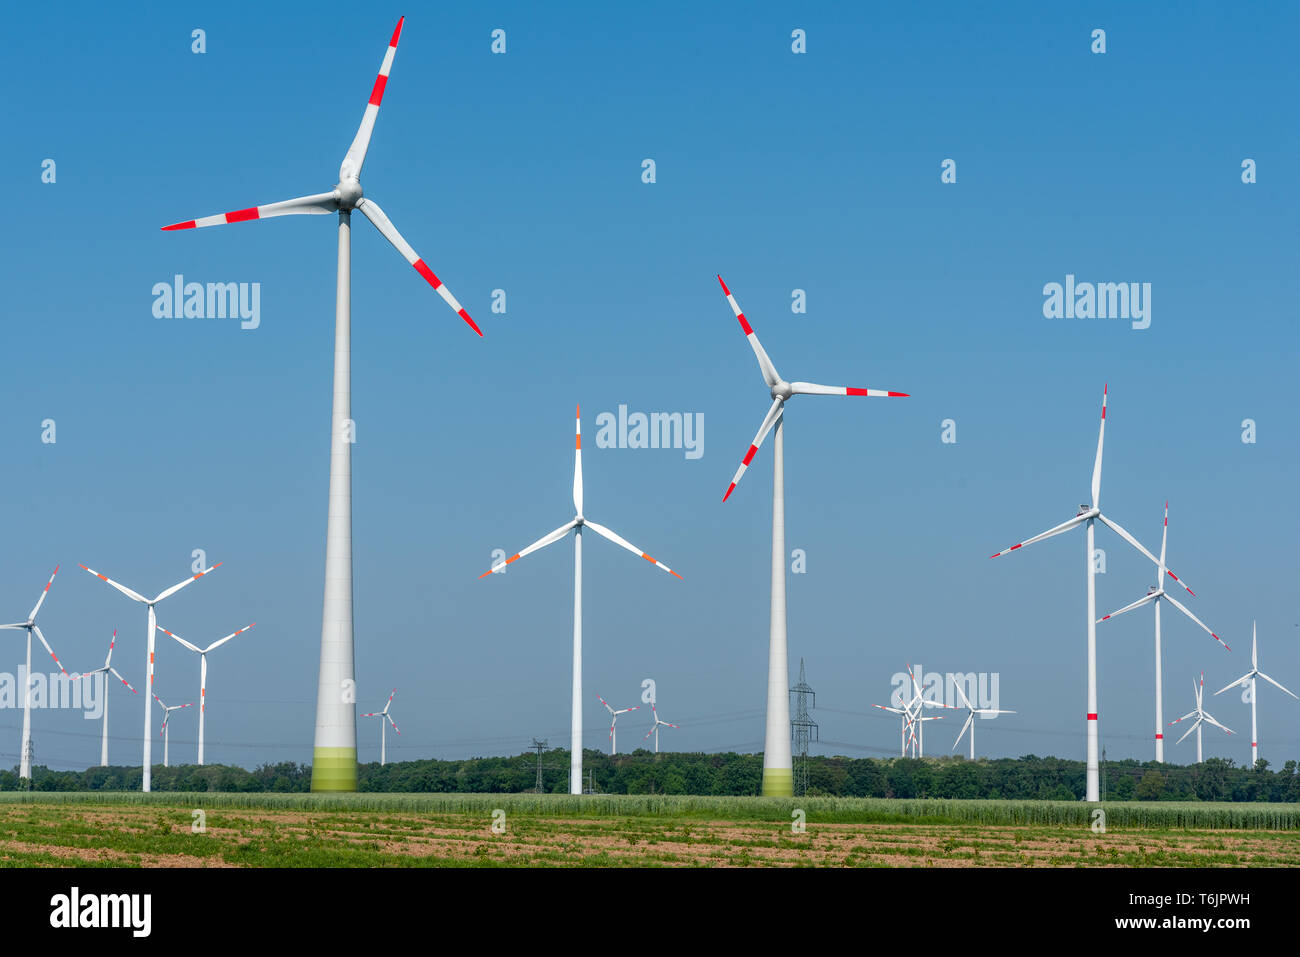 Wind power plants in the fields seen in rural Germany Stock Photo